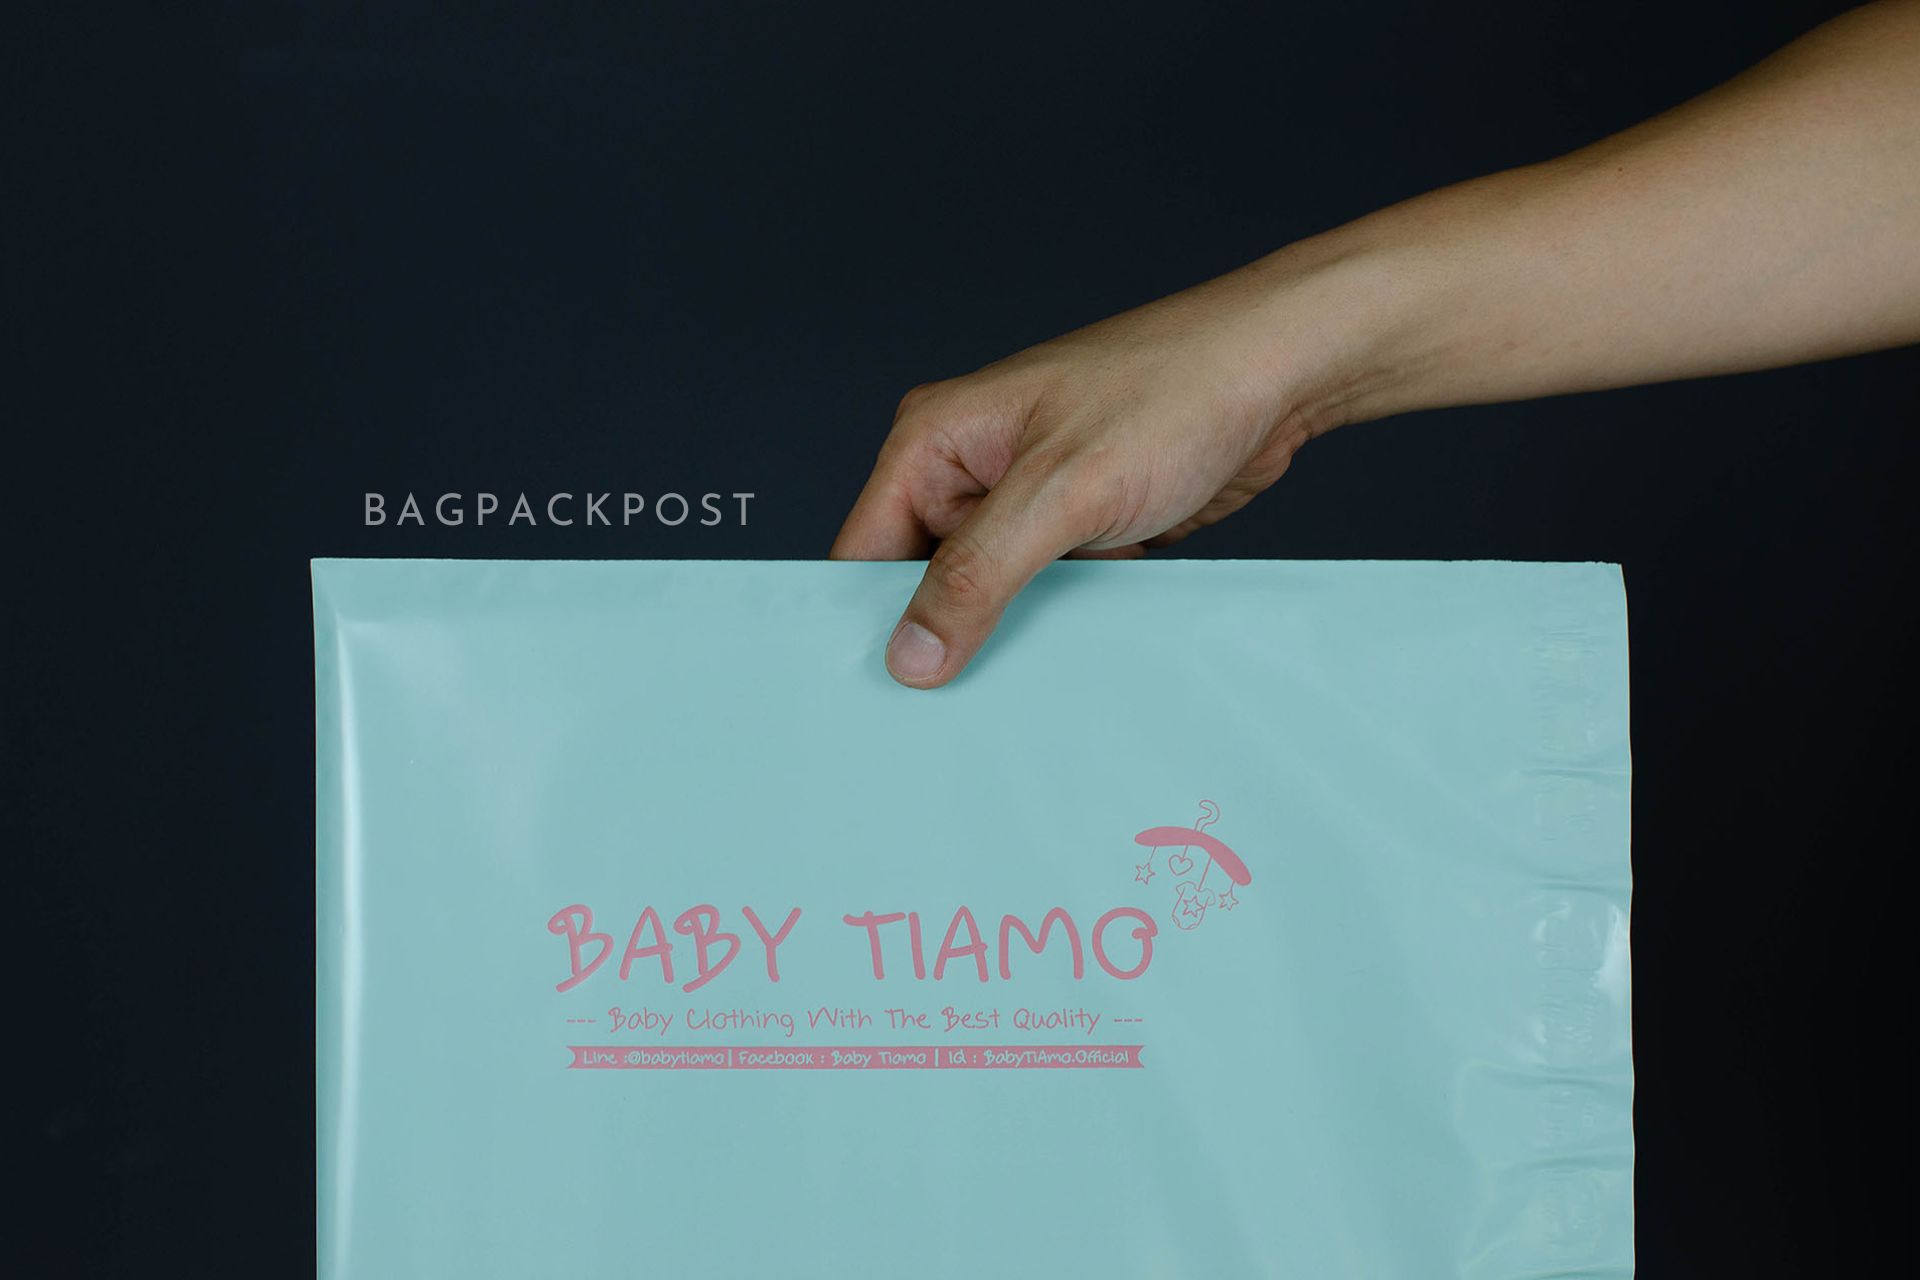 ผลิตถุงไปรษณีย์ ซองไปรษณีย์พิมพ์ลาย Baby Tiamo ซองไปรษณีย์สีเขียวมิ้นท์ ถุงไปรษณีย์พิมพ์ลาย 2 BagPackPost